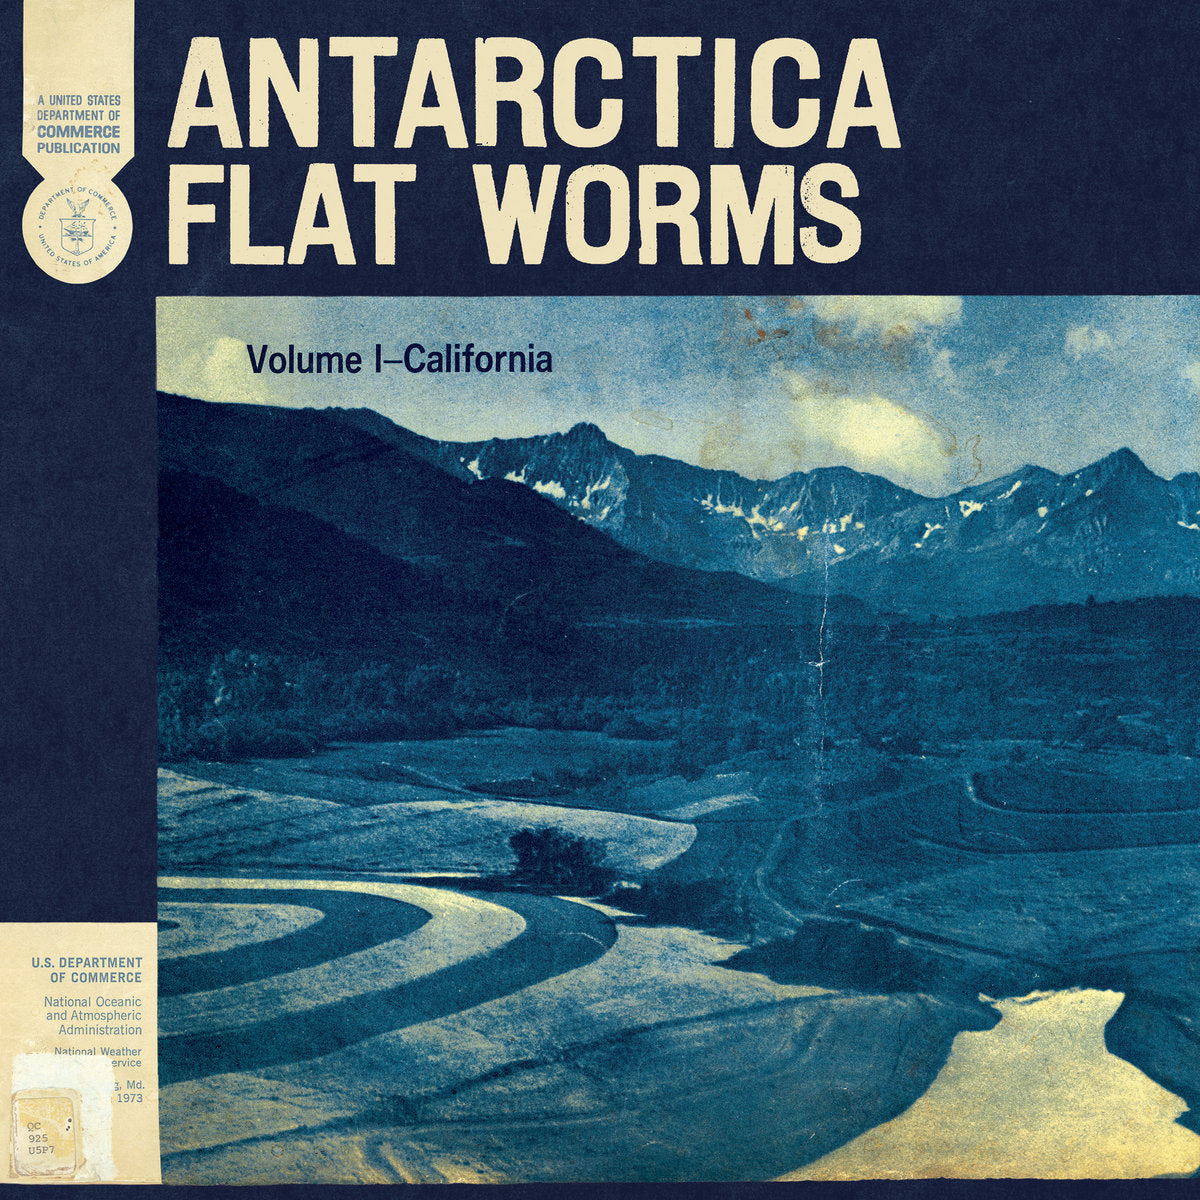 FLAT WORMS - ANTARCTICA Vinyl LP